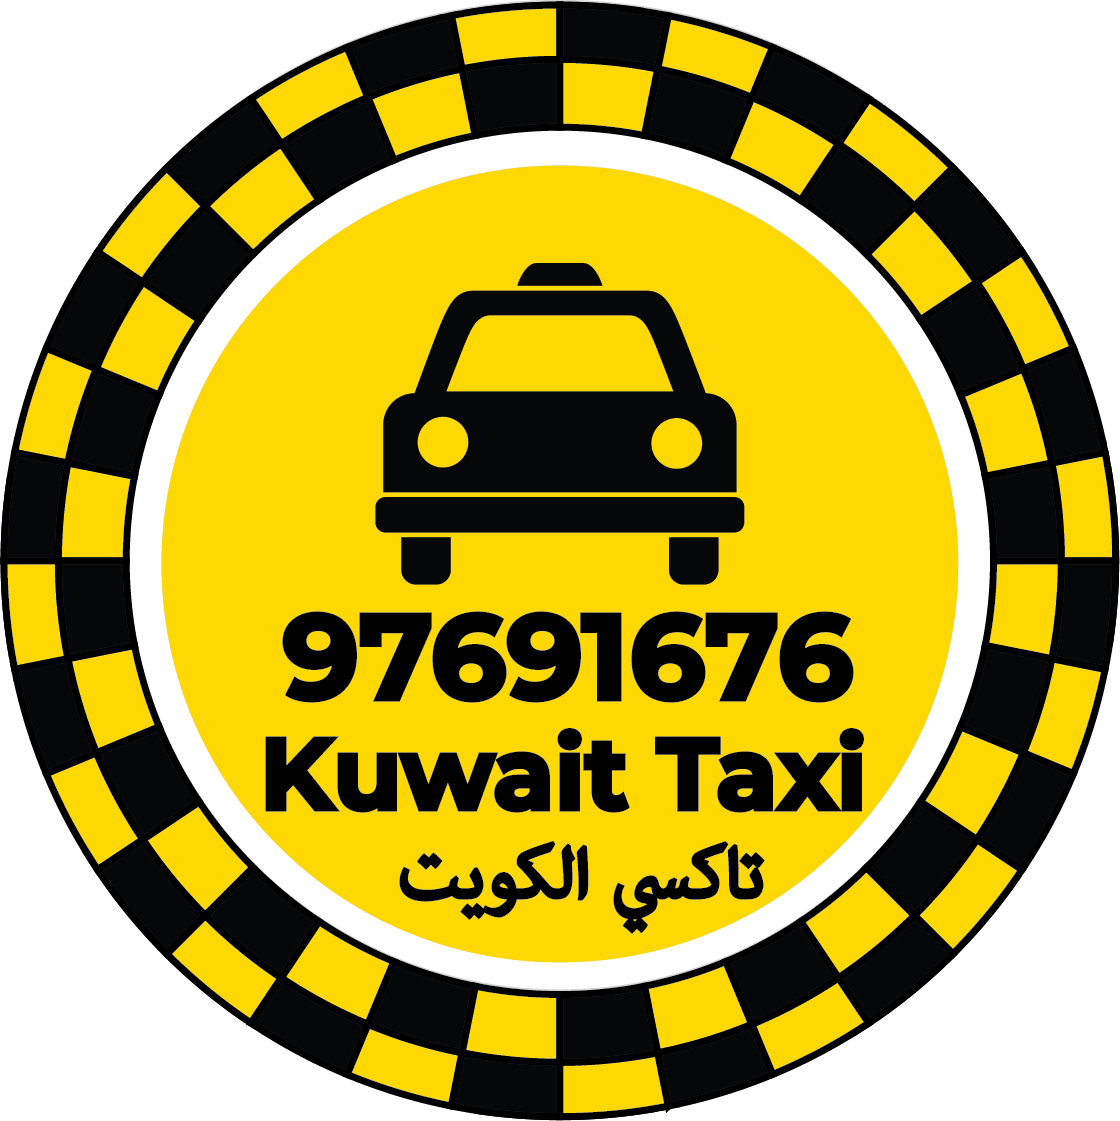 تاكسي الشامية 97691676 – ارقام تاكسي في الشامية